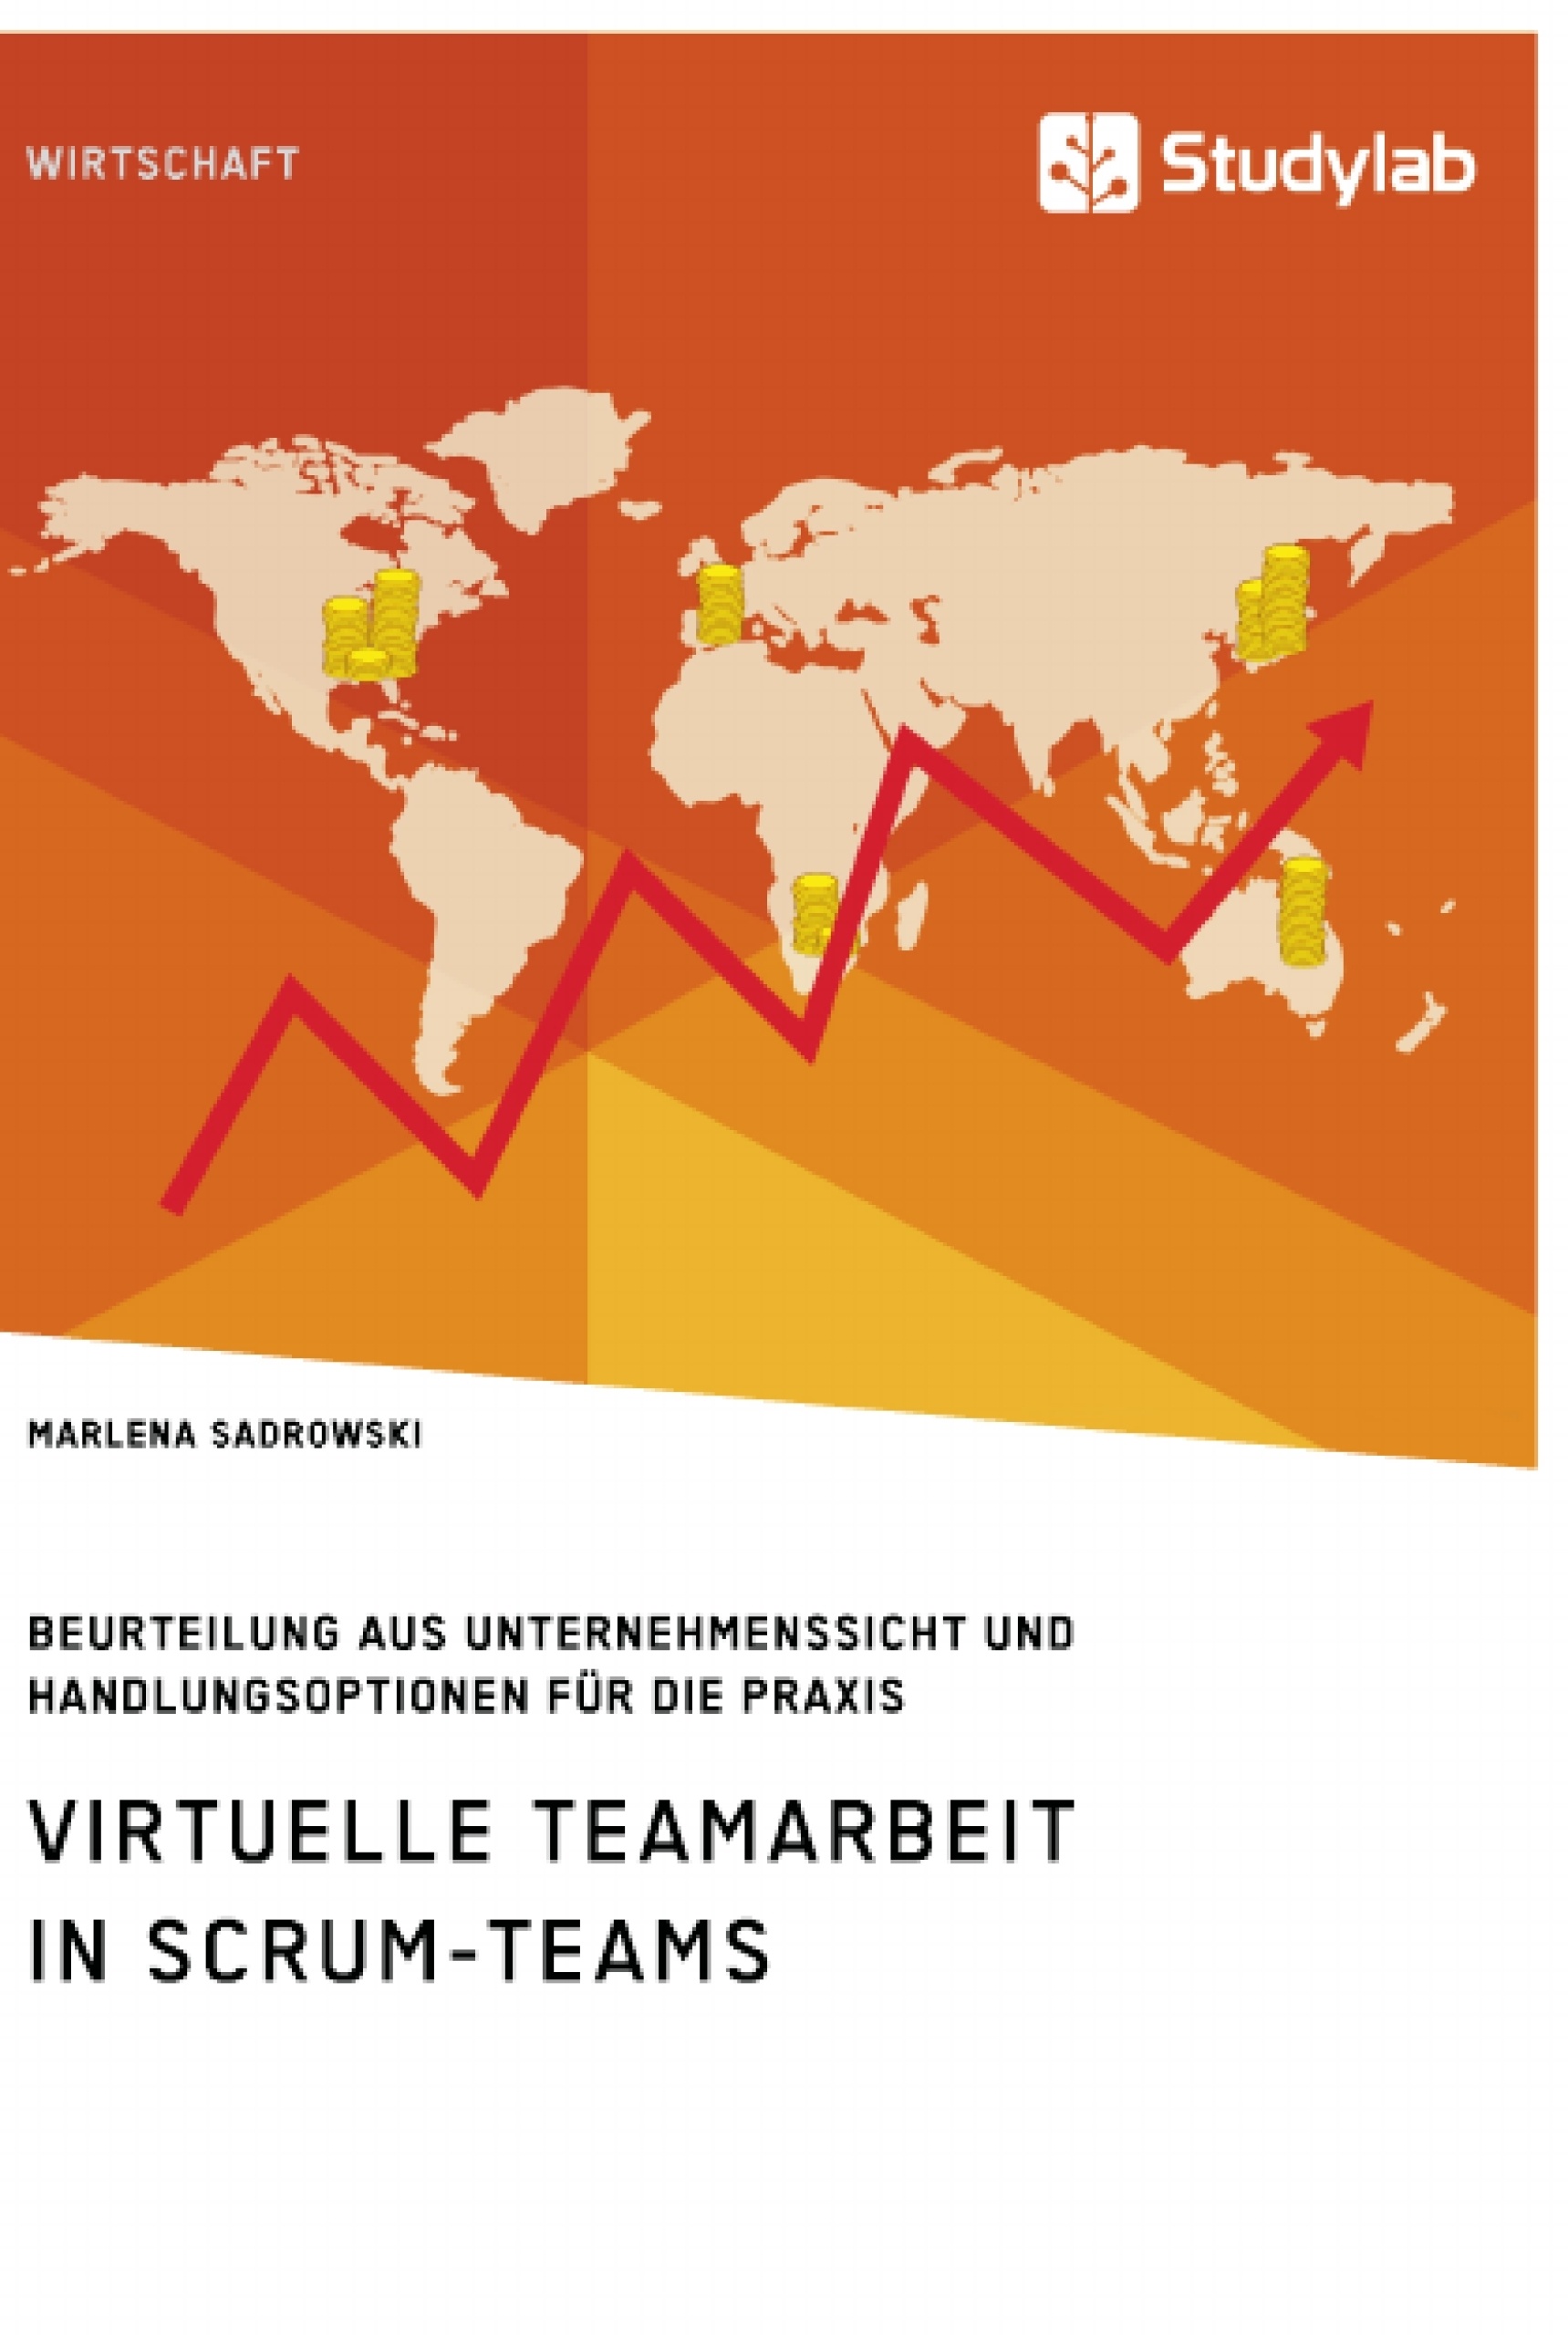 Titre: Virtuelle Teamarbeit in Scrum-Teams. Beurteilung aus Unternehmenssicht und Handlungsoptionen für die Praxis